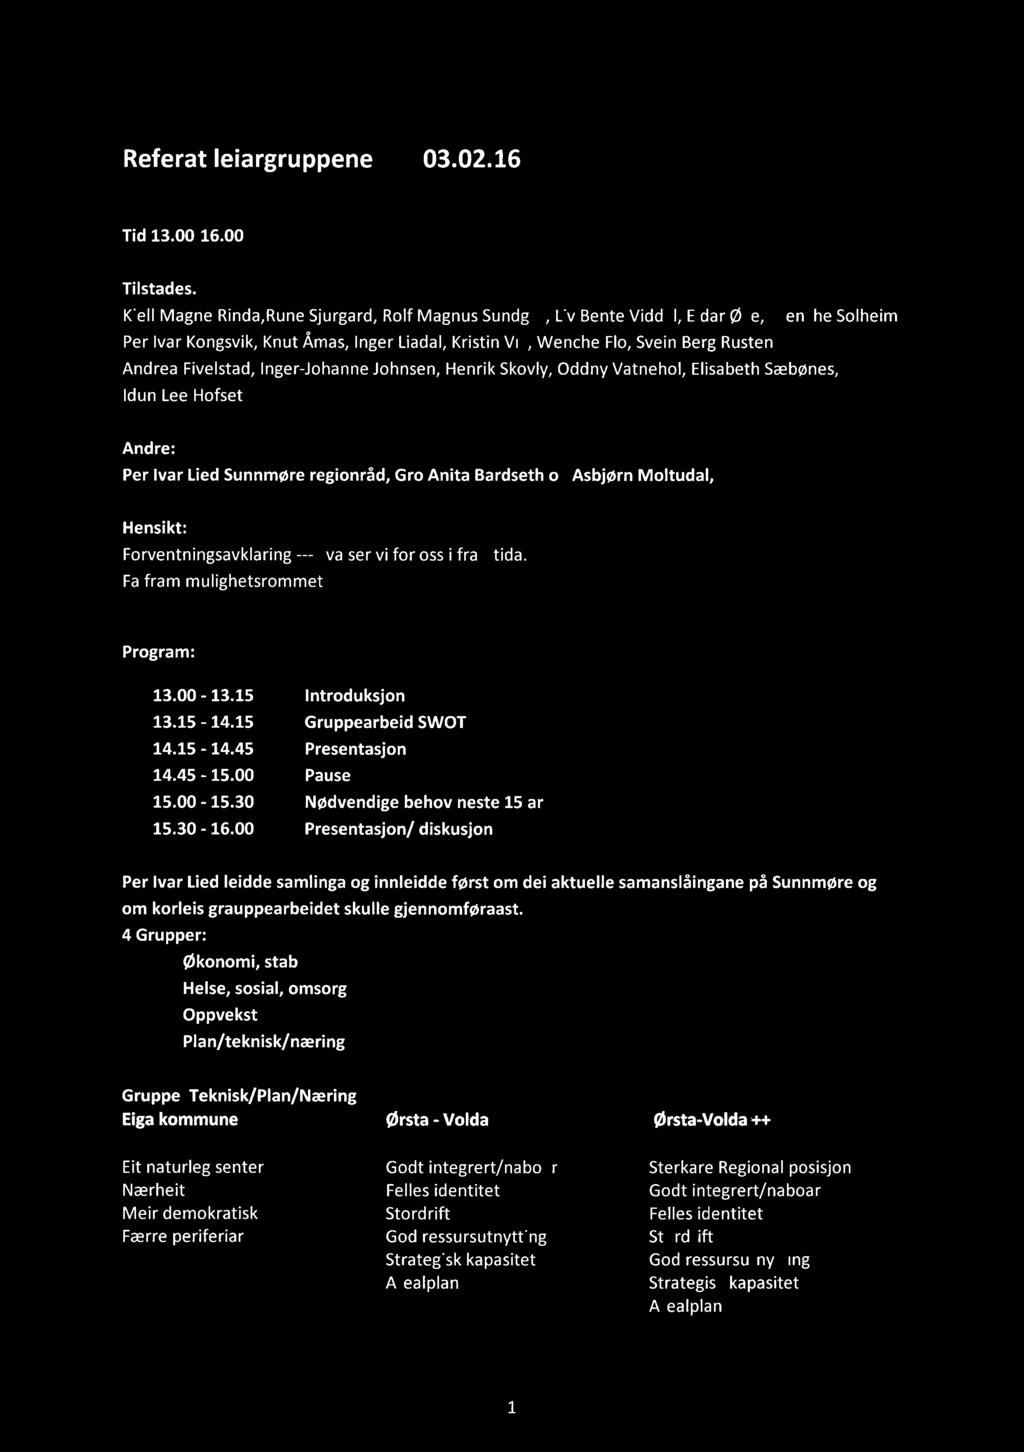 Referat leiargruppene 03.02.16 Tid 13.00-16.00 Tilstades. Kjell Magne Rinda,Rune Sjurgard, Rolf Magnus Sundgot, Liv Bente Viddal, Eldar Oye, Wenche Solheim Per!val.